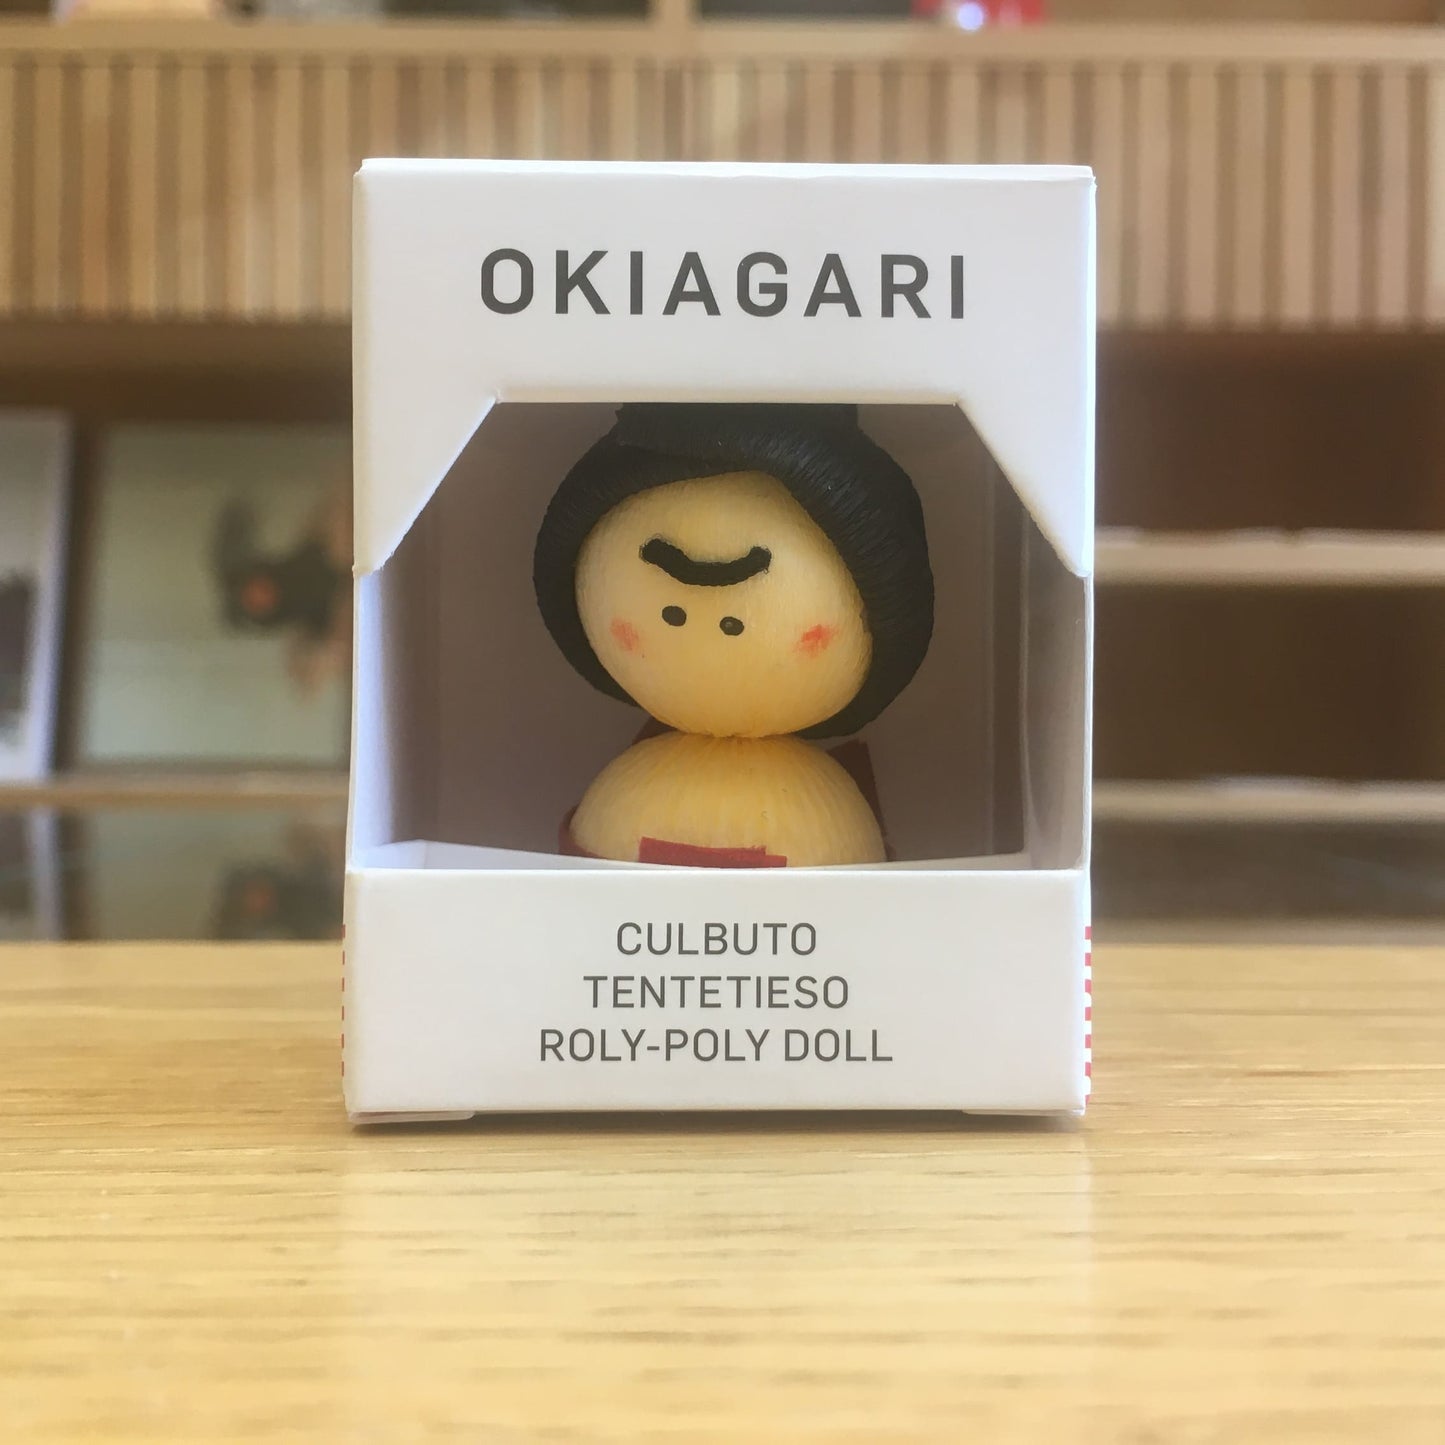 Okiagari Sumo, rolly-polly doll